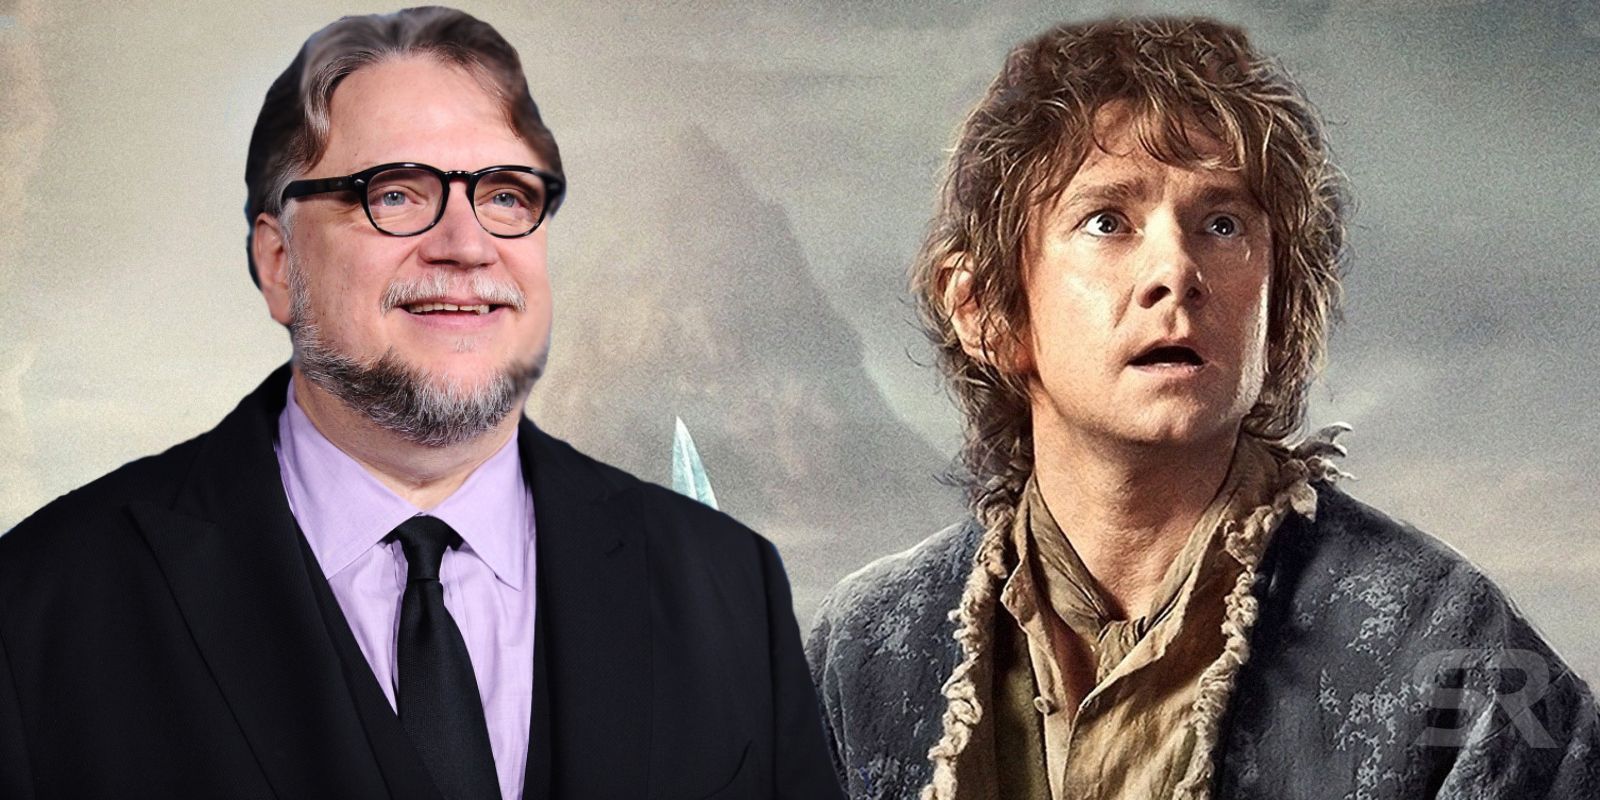 Guillermo del Toro and Martin Freeman